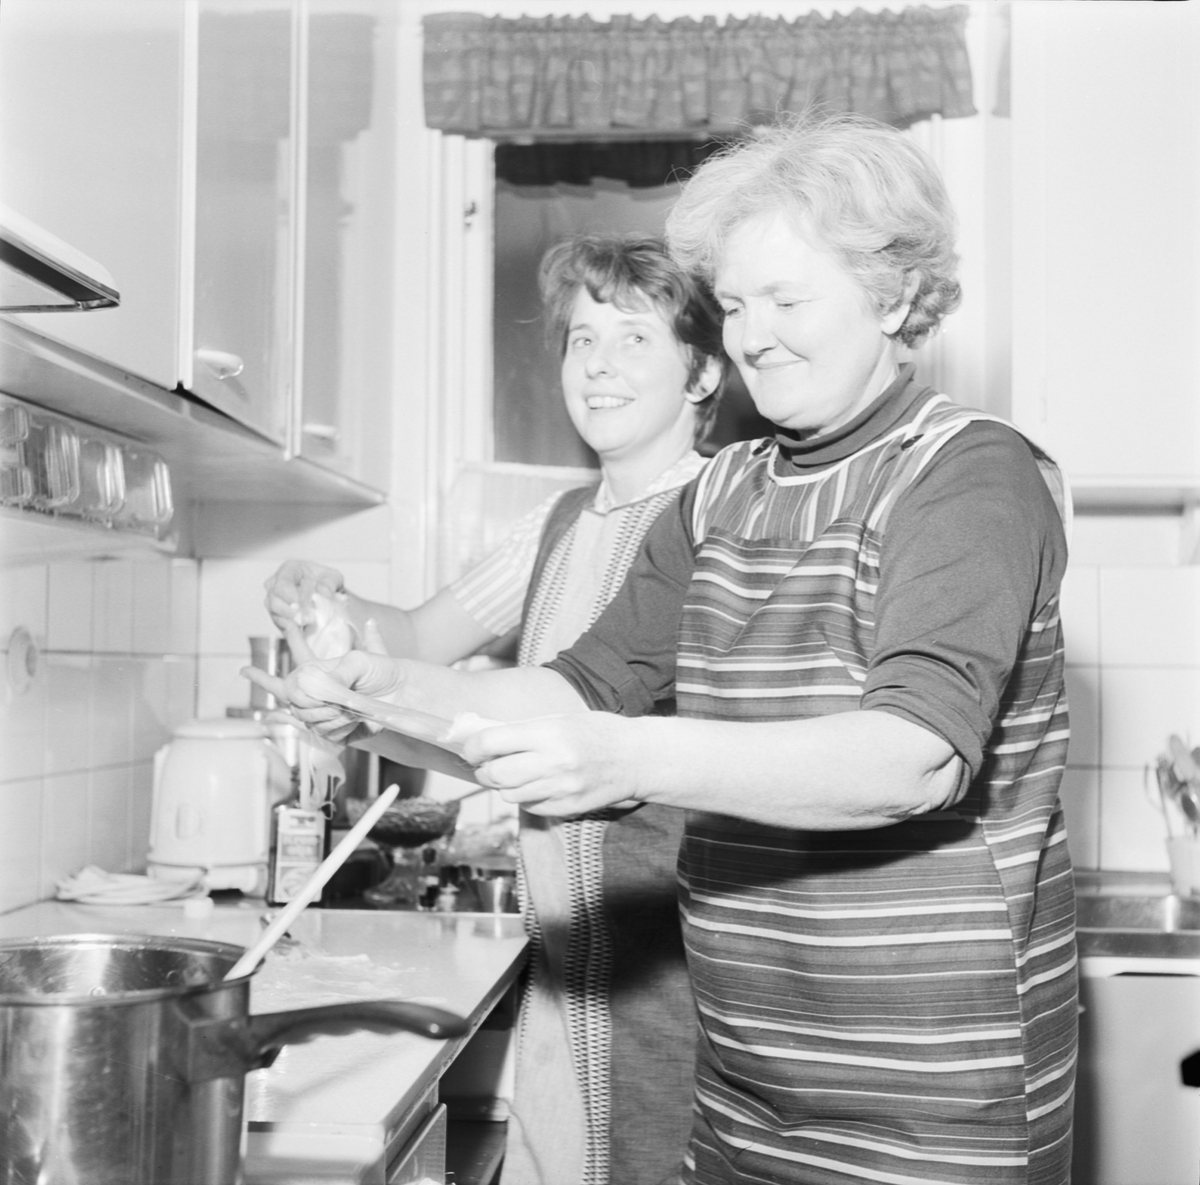 Söderforsfruar kokar, sannolikt julgodis, Uppland 1968